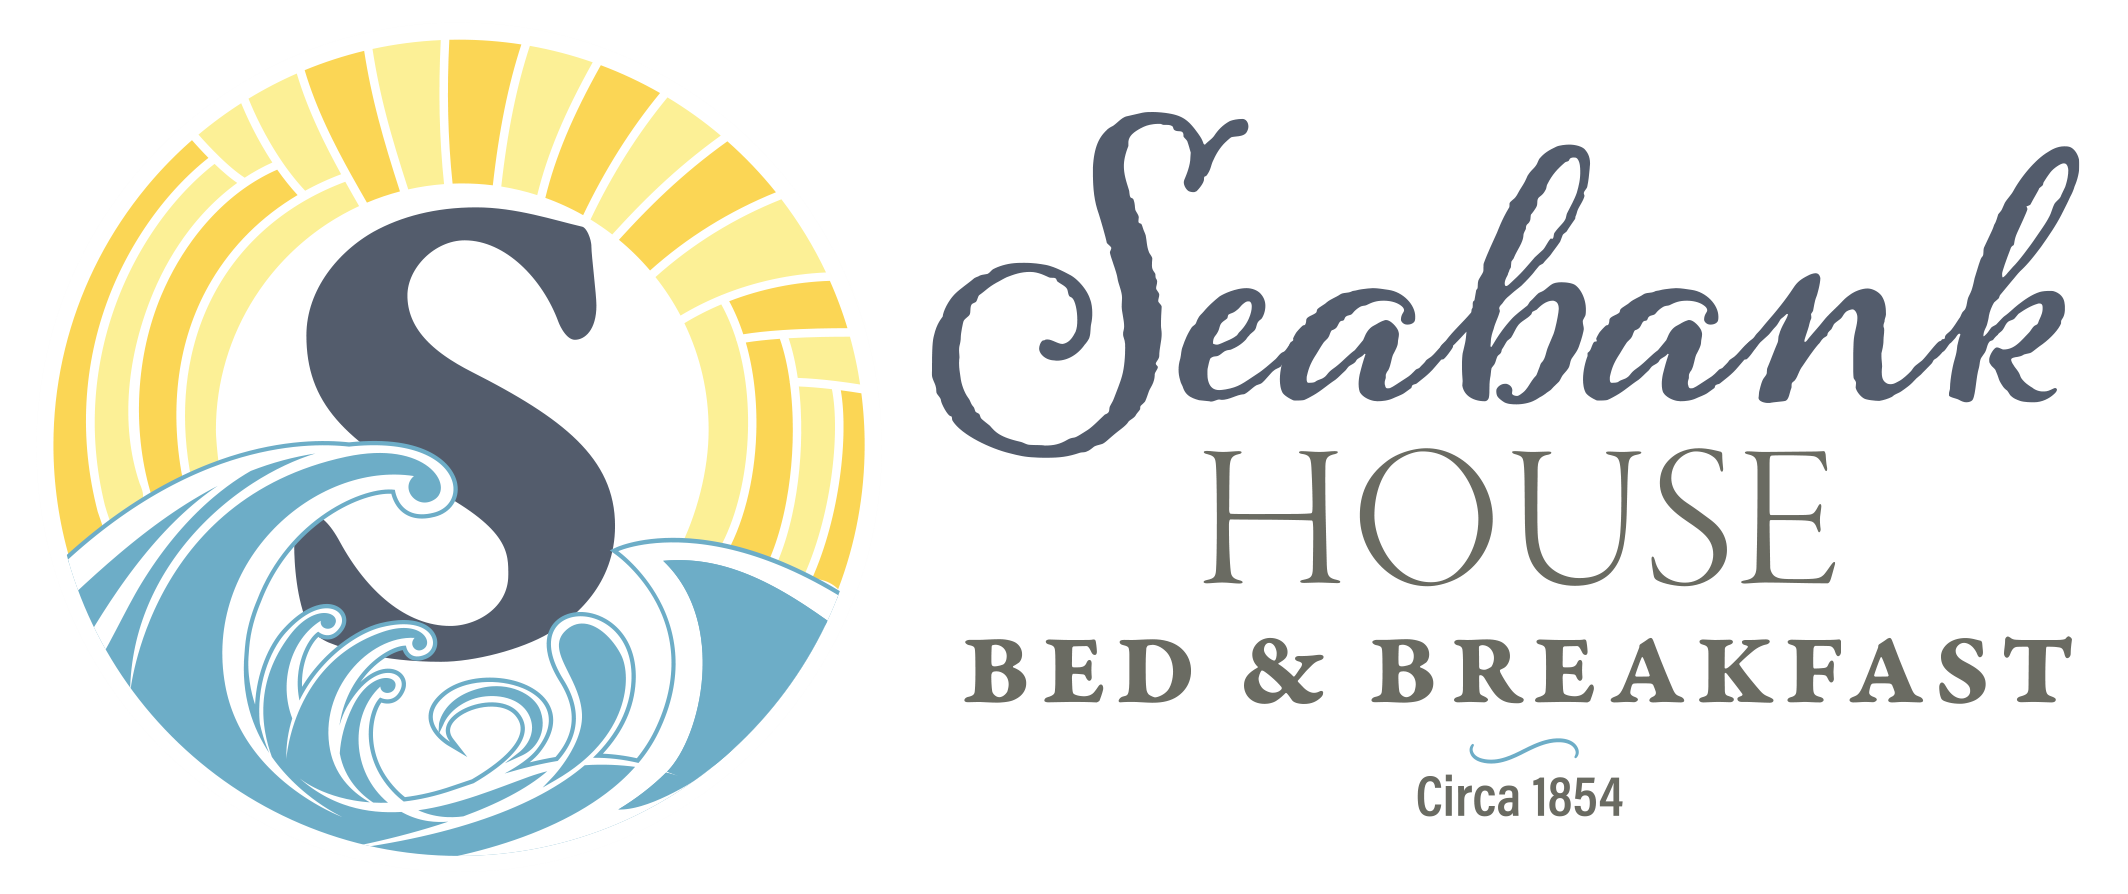 Seabank House Bed & Breakfast